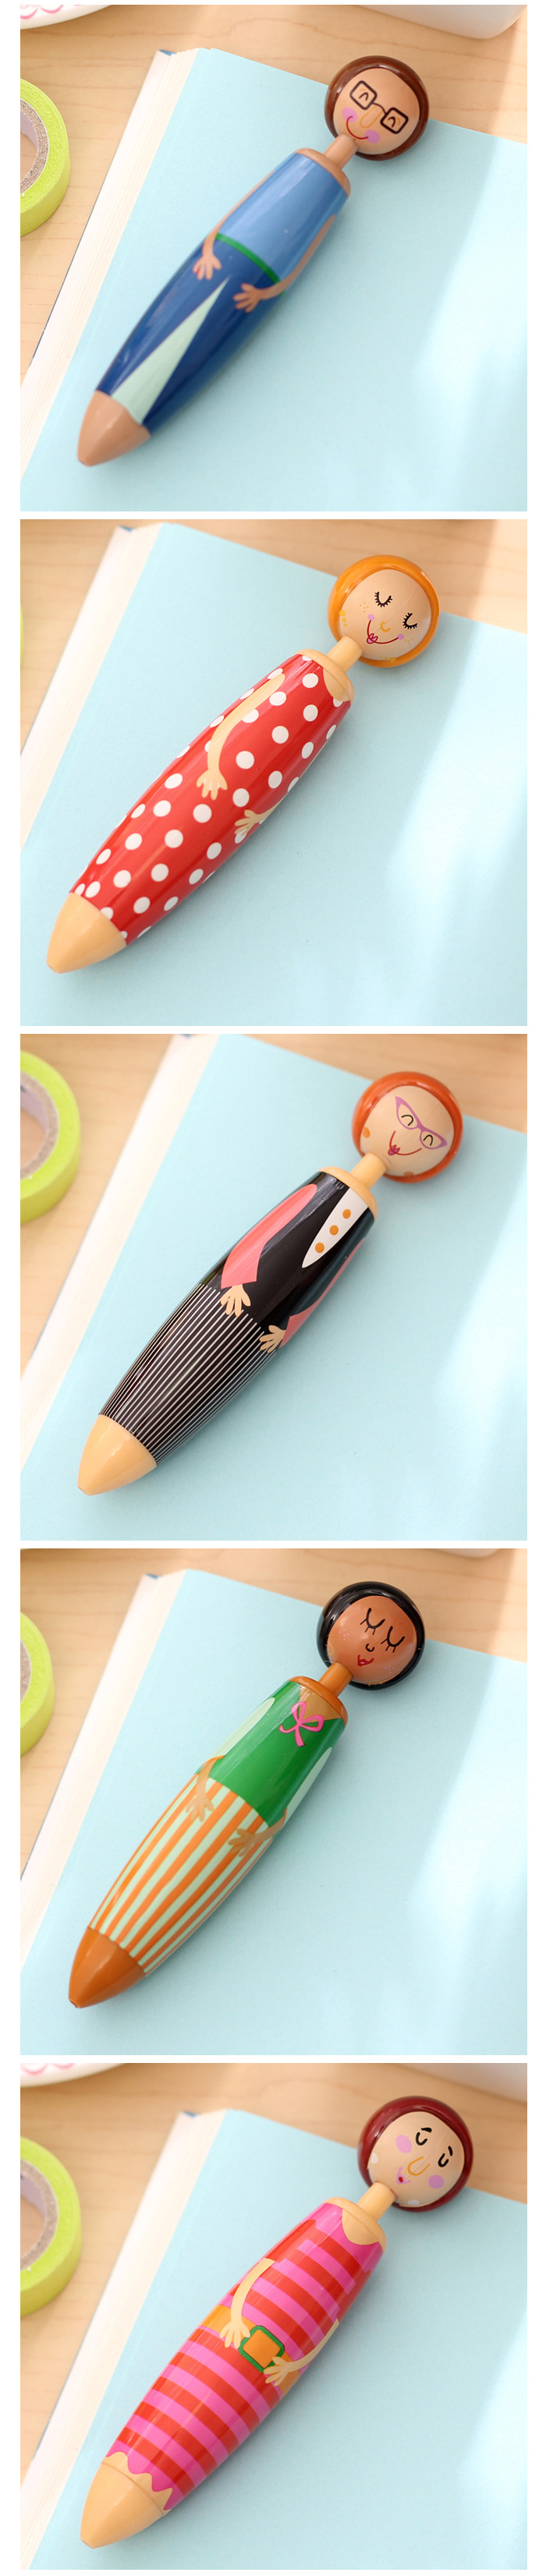 可愛人偶原子筆 創意造型胖胖筆 文具用品 造型原子筆 人物造型圓珠筆3